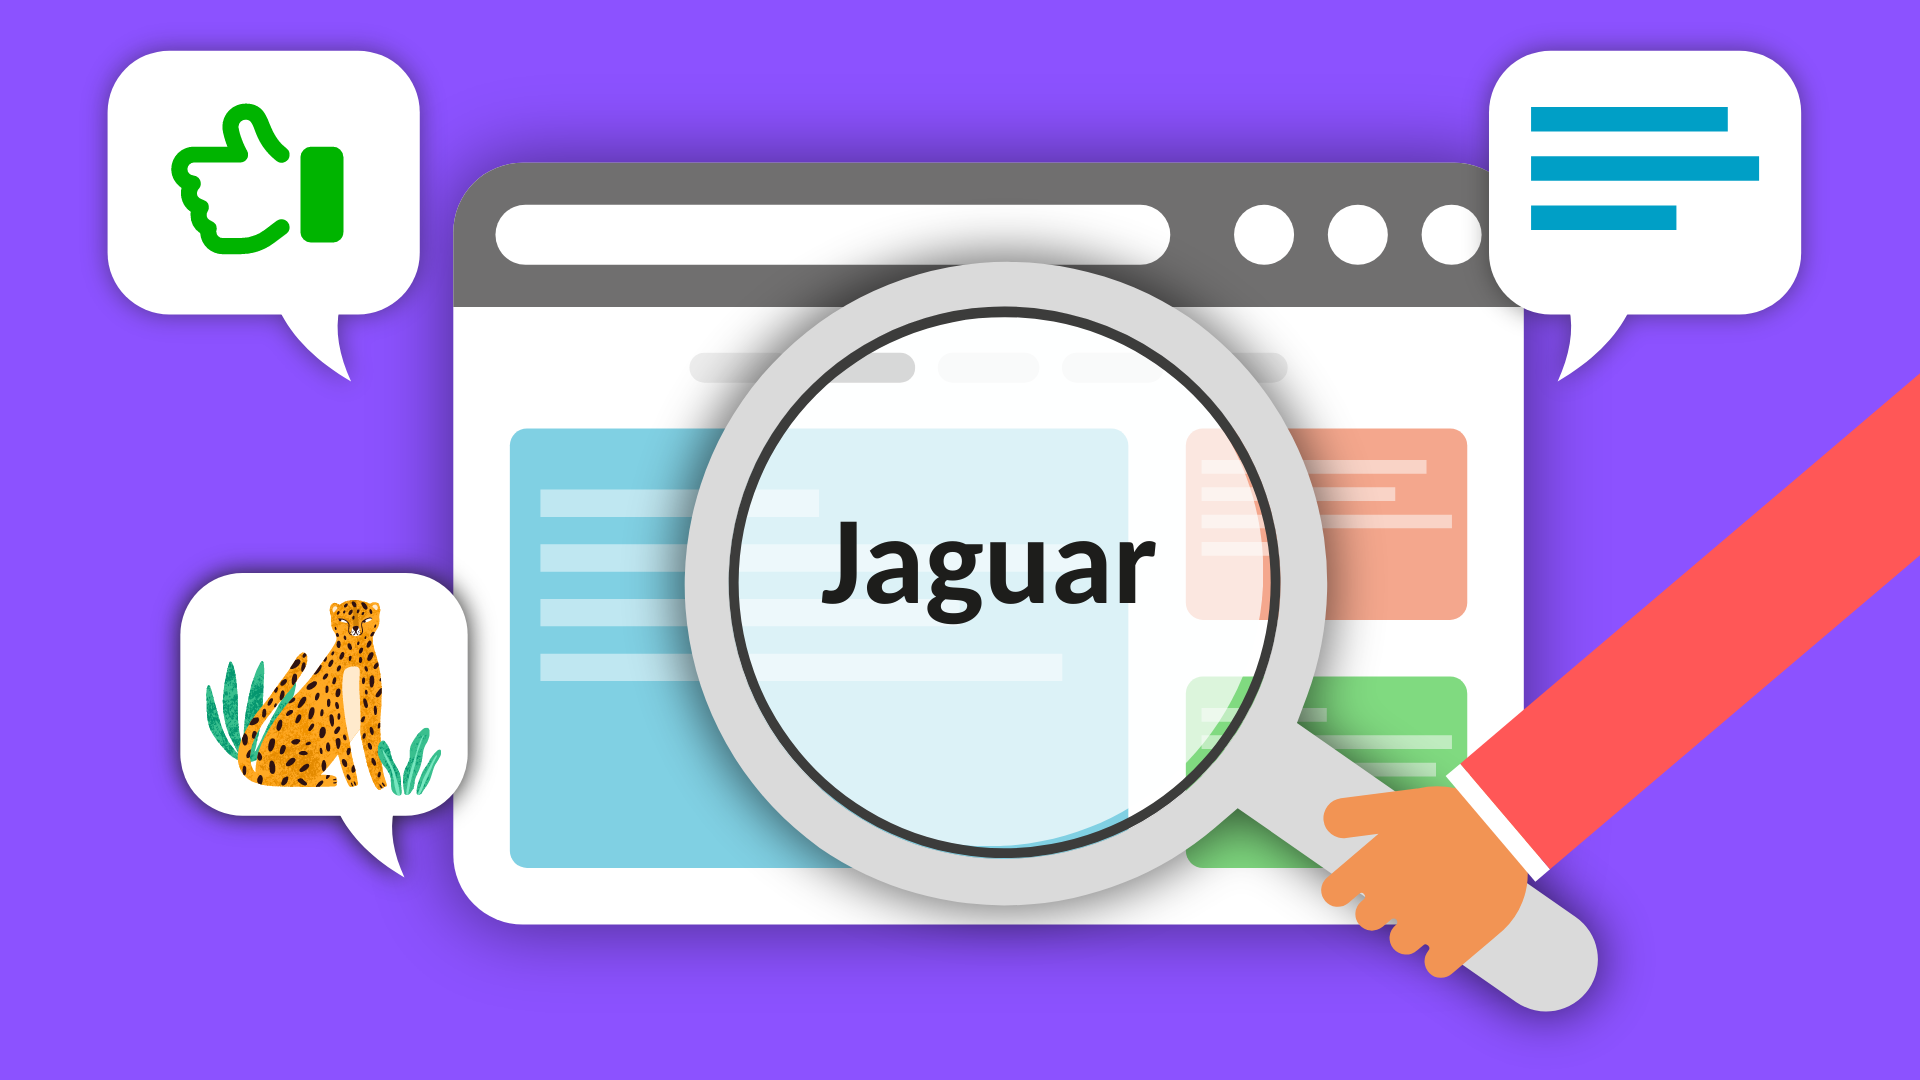 Internetseite darum drei Sprechblasen mit Text, einem Jaguar Bild und einem Daumenhoch. Eine Hand hält eine Große Lupe vor die Internetseite. In der Lupe steht das Wort Jaguar.